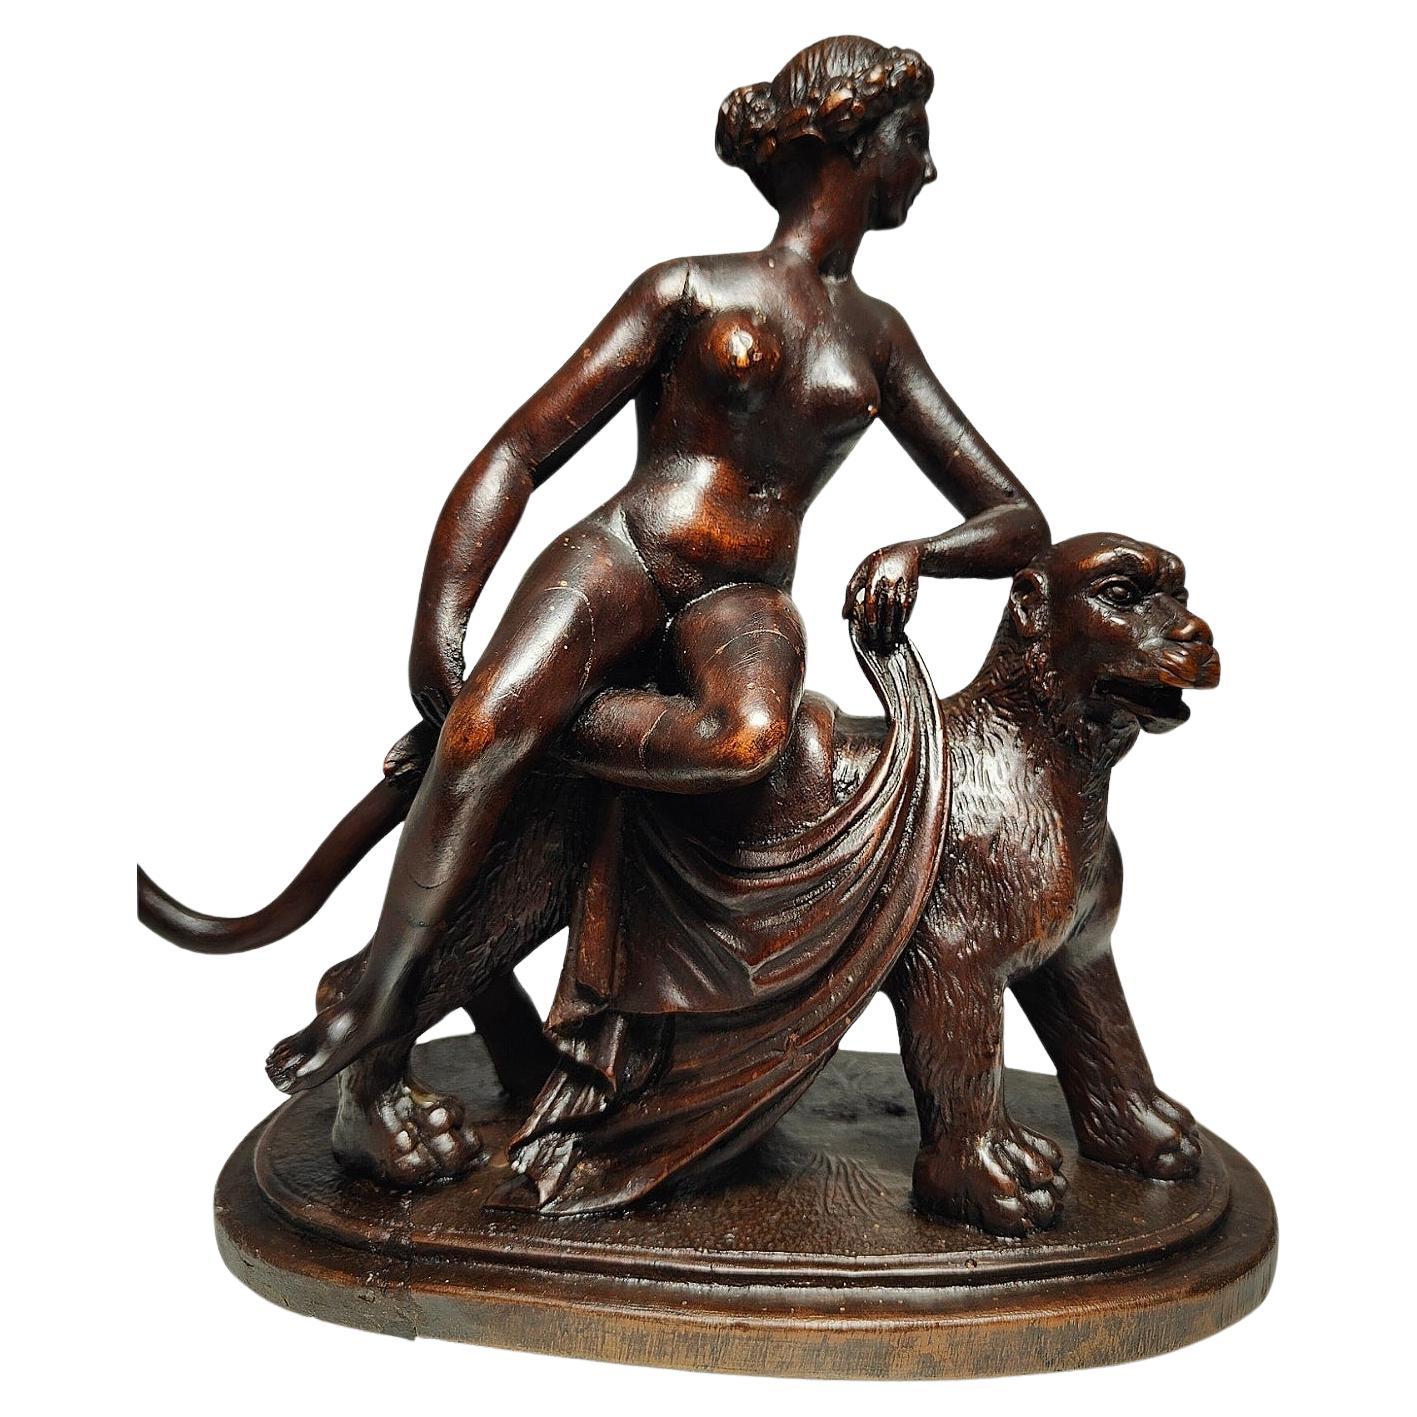 Sculpture by Johann Heinrich von Dannecker "Ariadne on the Panther" For Sale